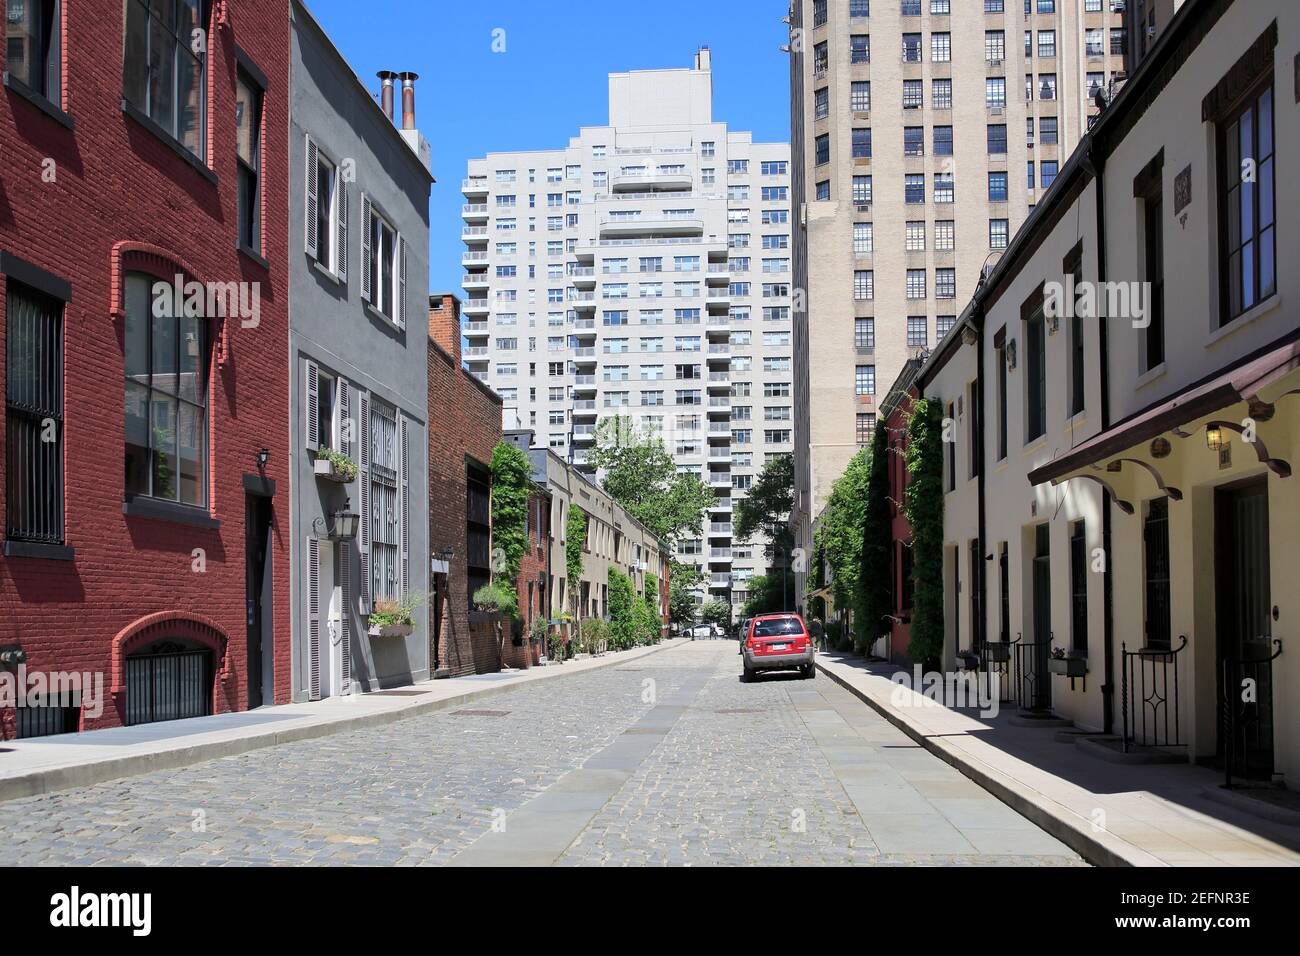 Washington Mews, une rue avec des maisons de calèche historiques, Greenwich Village, Manhattan, New York City, Etats-Unis Banque D'Images